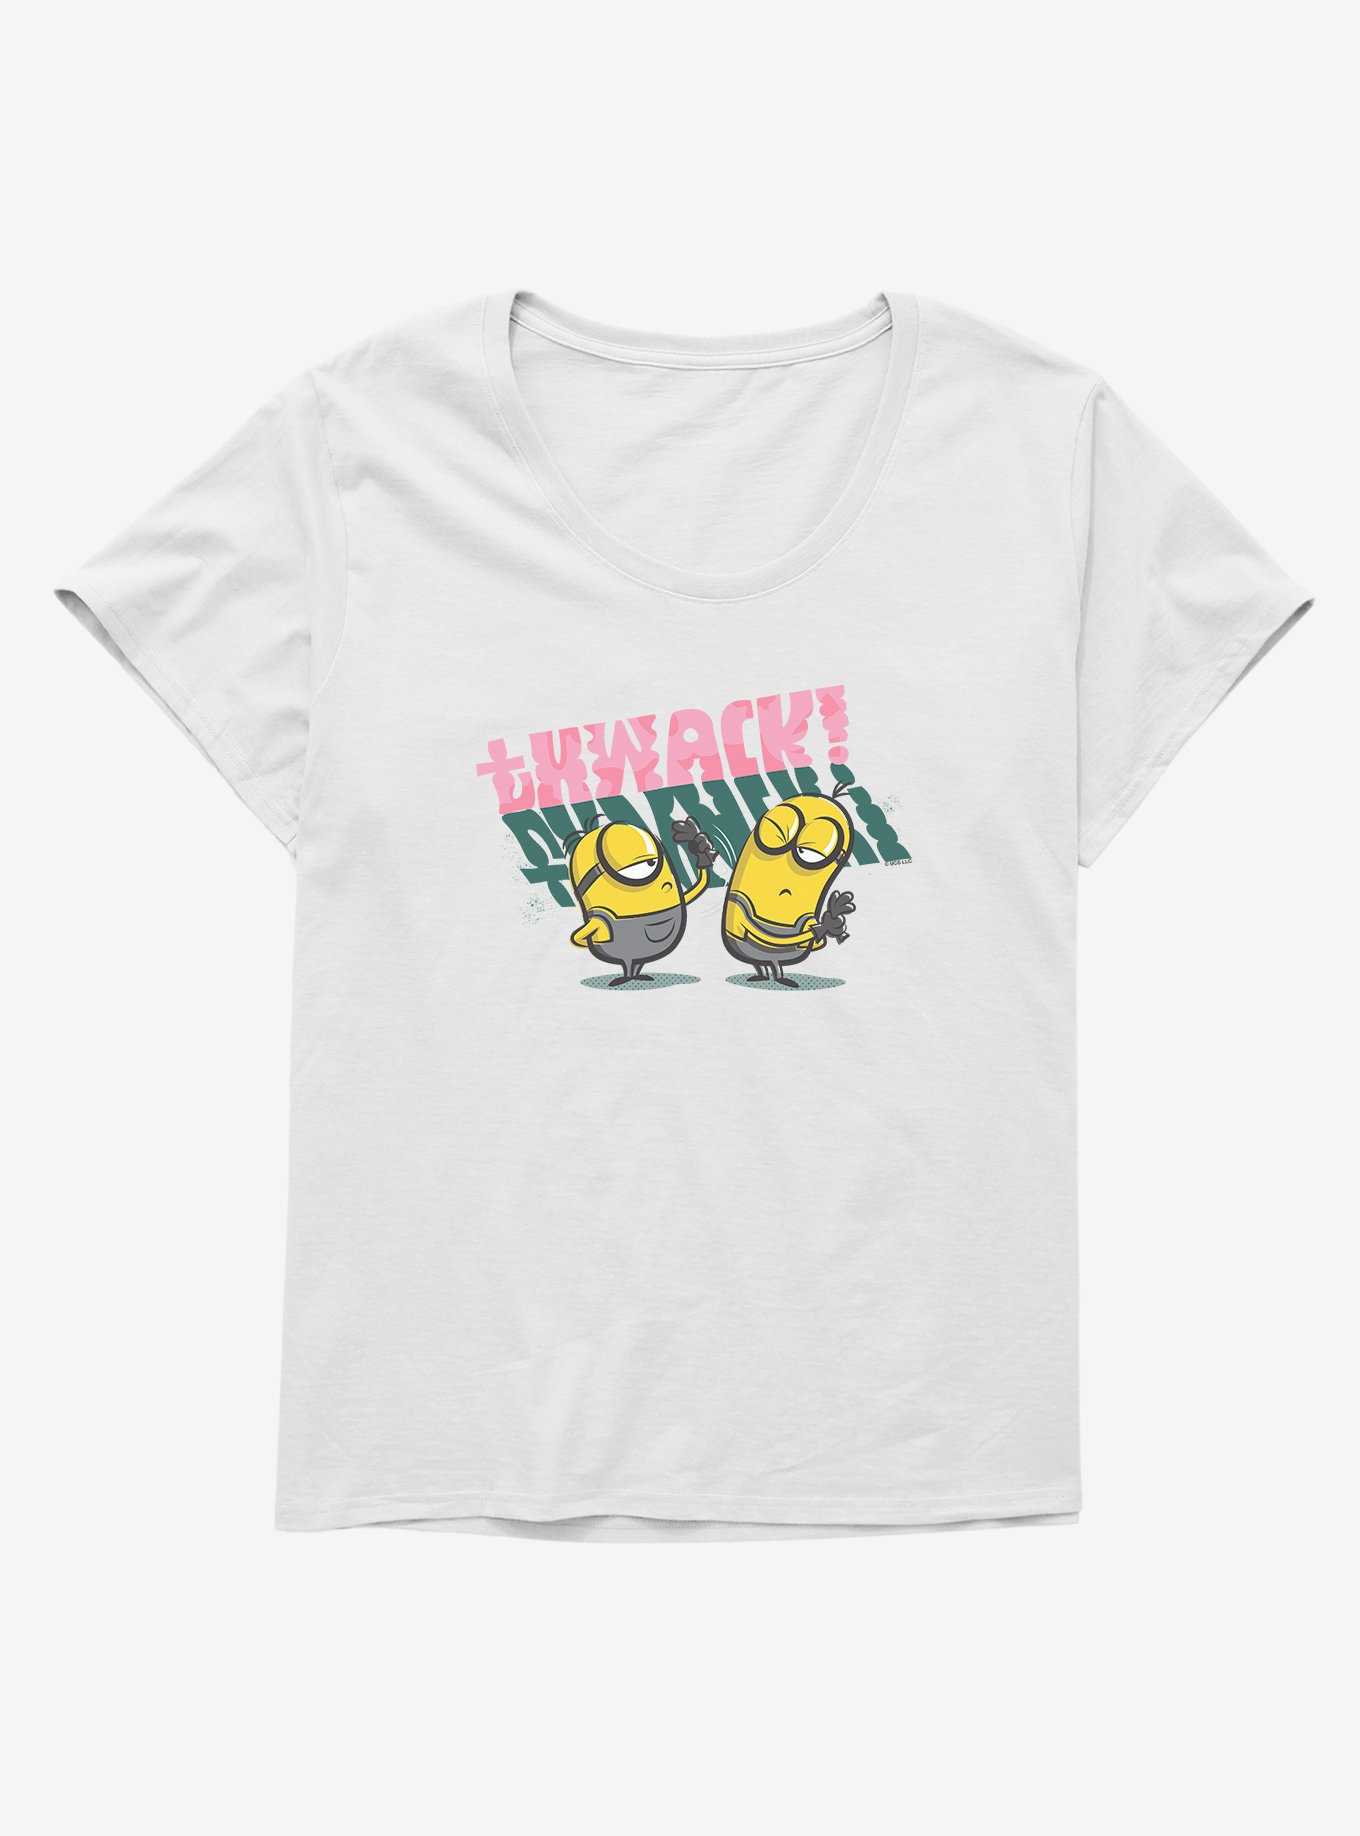 Minions Stuart Thwacks Kevin Girls T-Shirt Plus Size, , hi-res